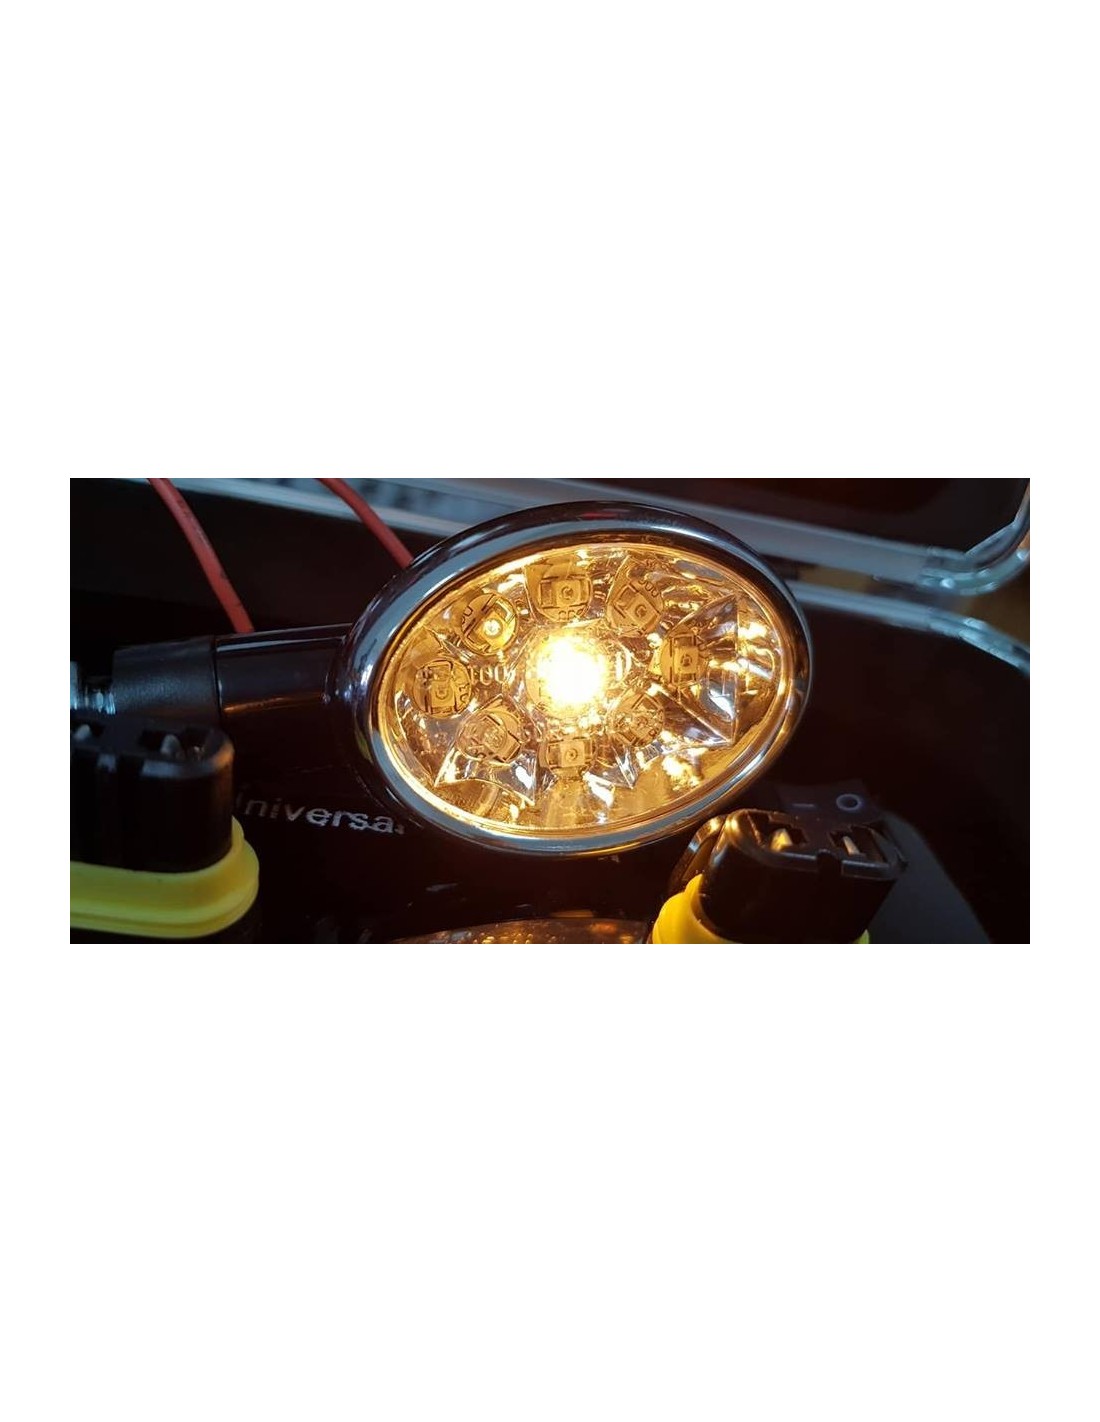 Intermitentes luz parpadeante intermitente nuevo TyC 337-0248-3 a la izquierda lampenart LED